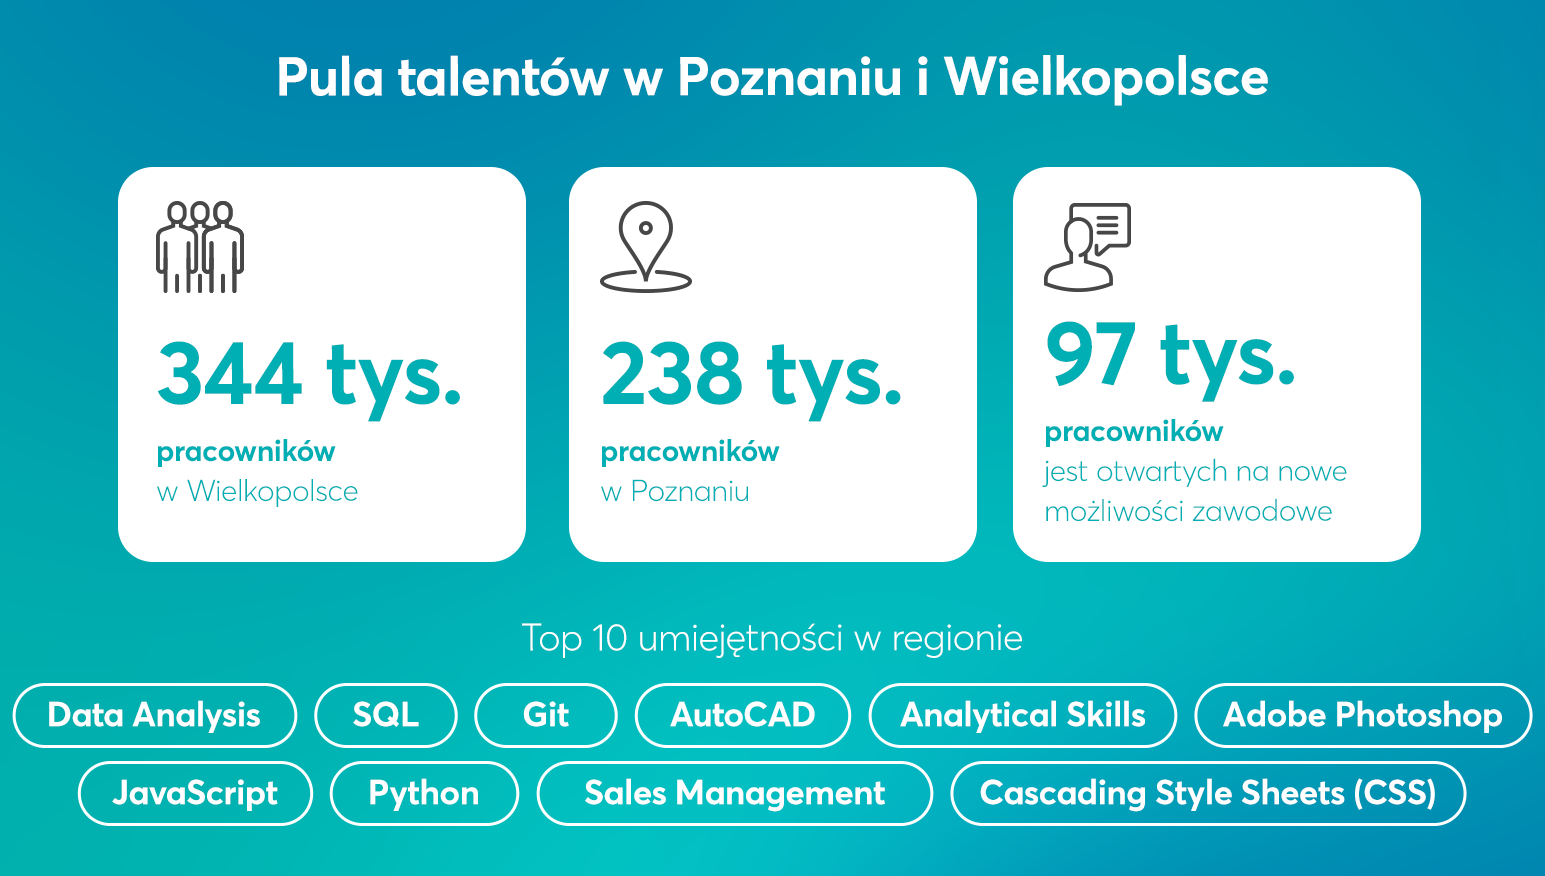 Pula talentów i Poznaniu i Wielkopolsce - infografika